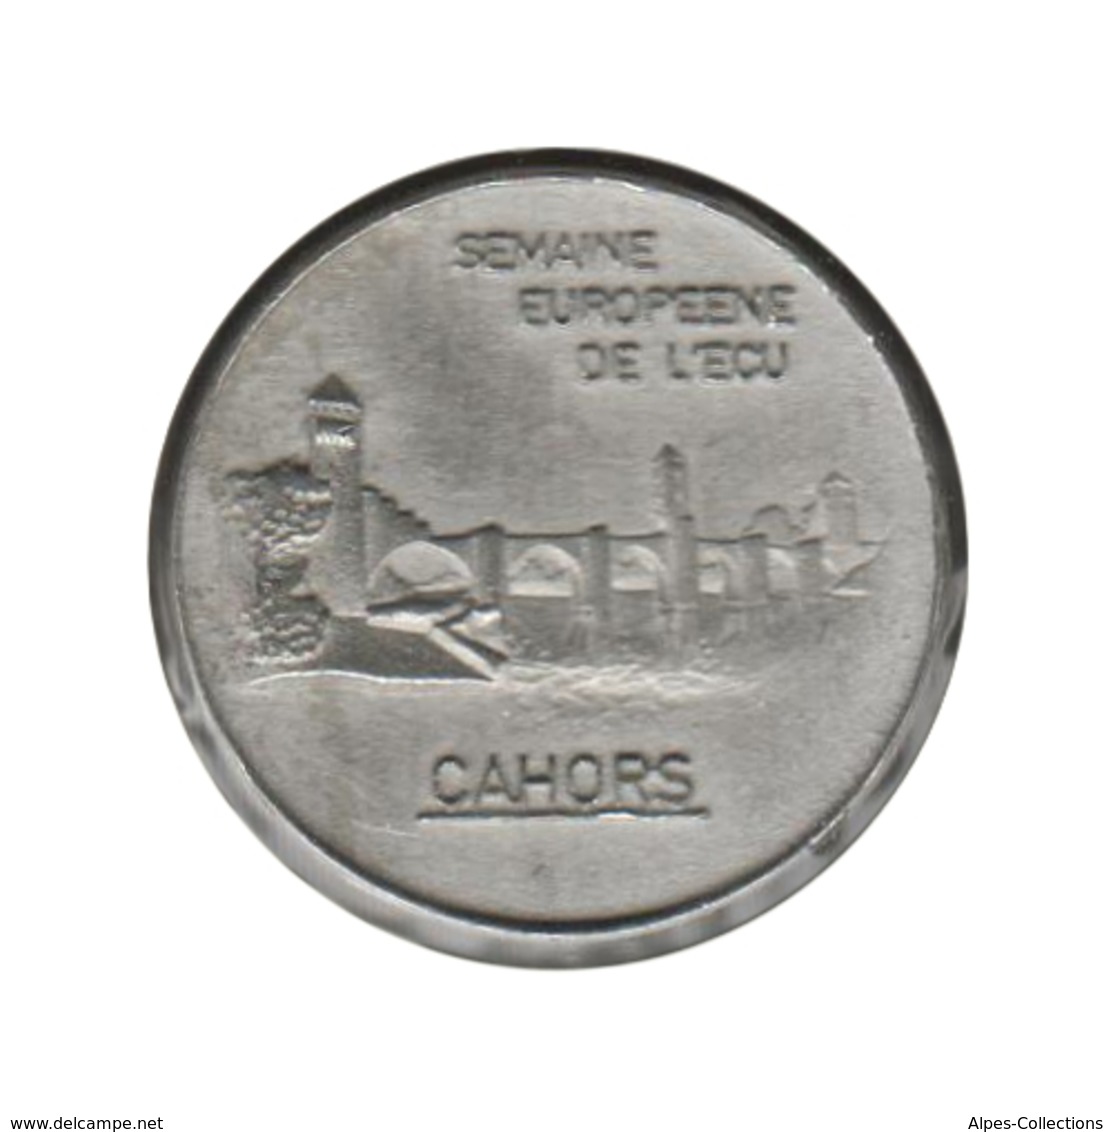 CAHORS - EC0010.1 - 1 ECU DES VILLES - Réf: NR - 1992 - Euros De Las Ciudades